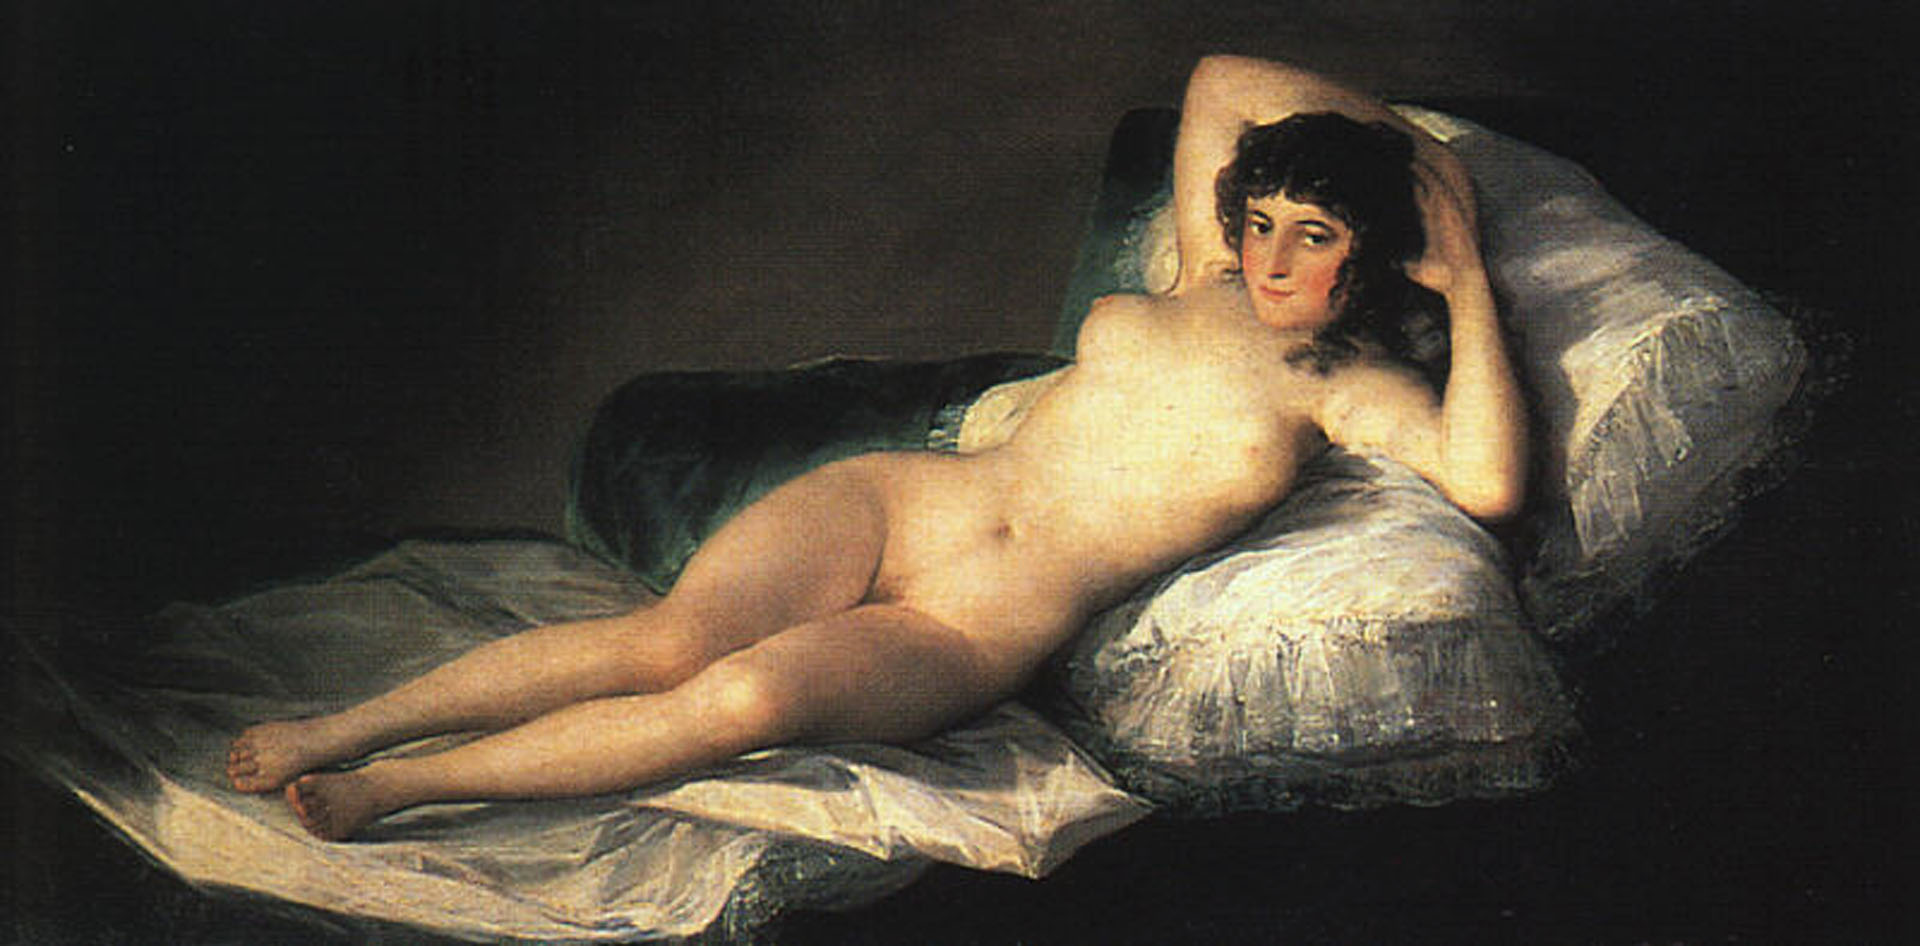 Nude Maja, Francisco Goya, 1800